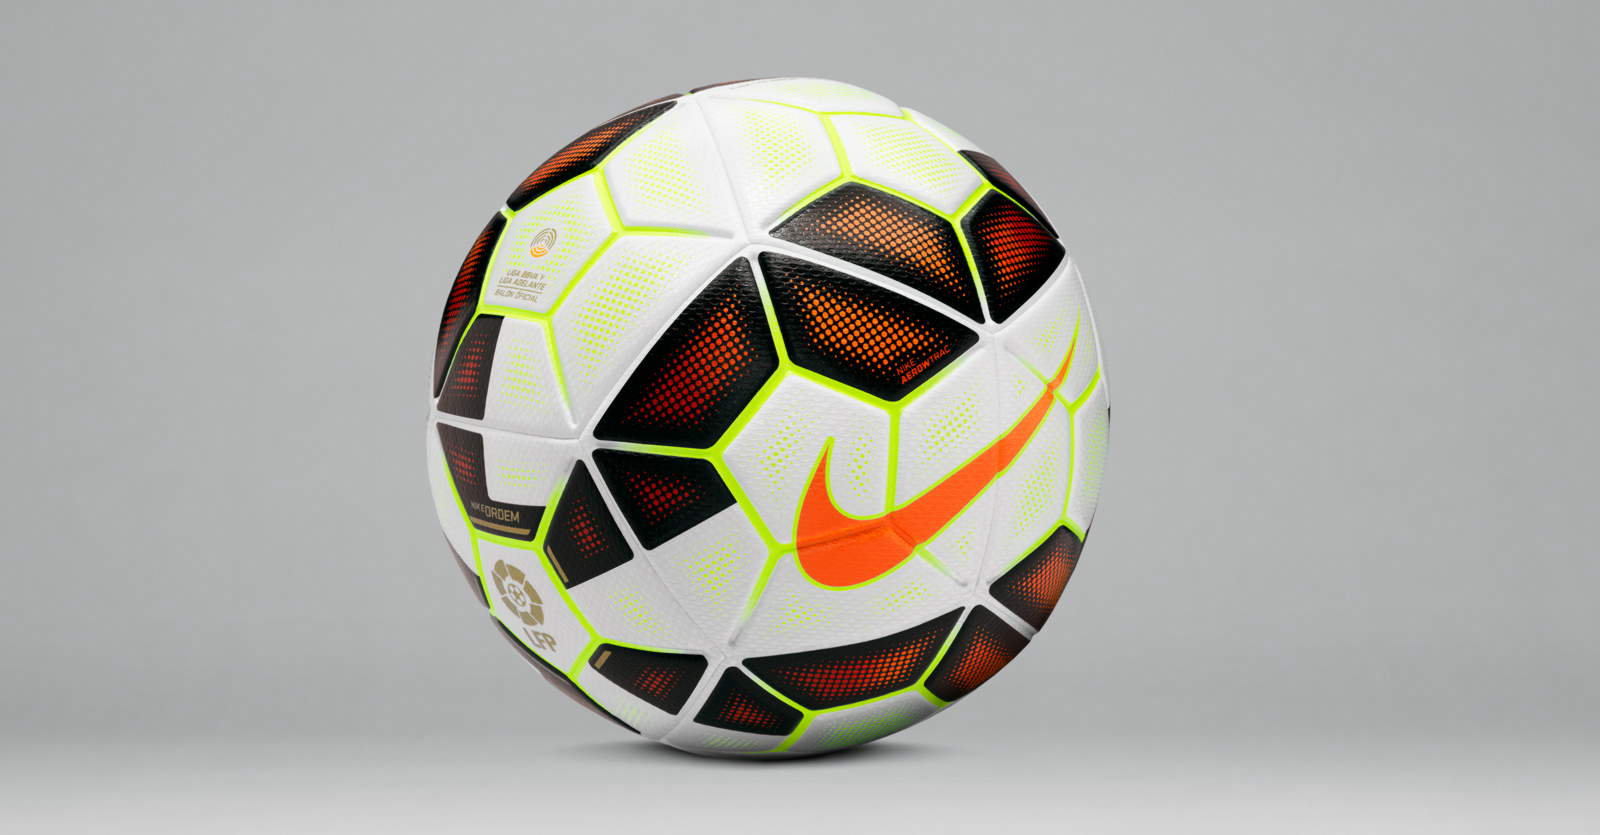 estar Respetuoso del medio ambiente frotis Nike Ordem 14-15 Primera División Ball Released - Footy Headlines